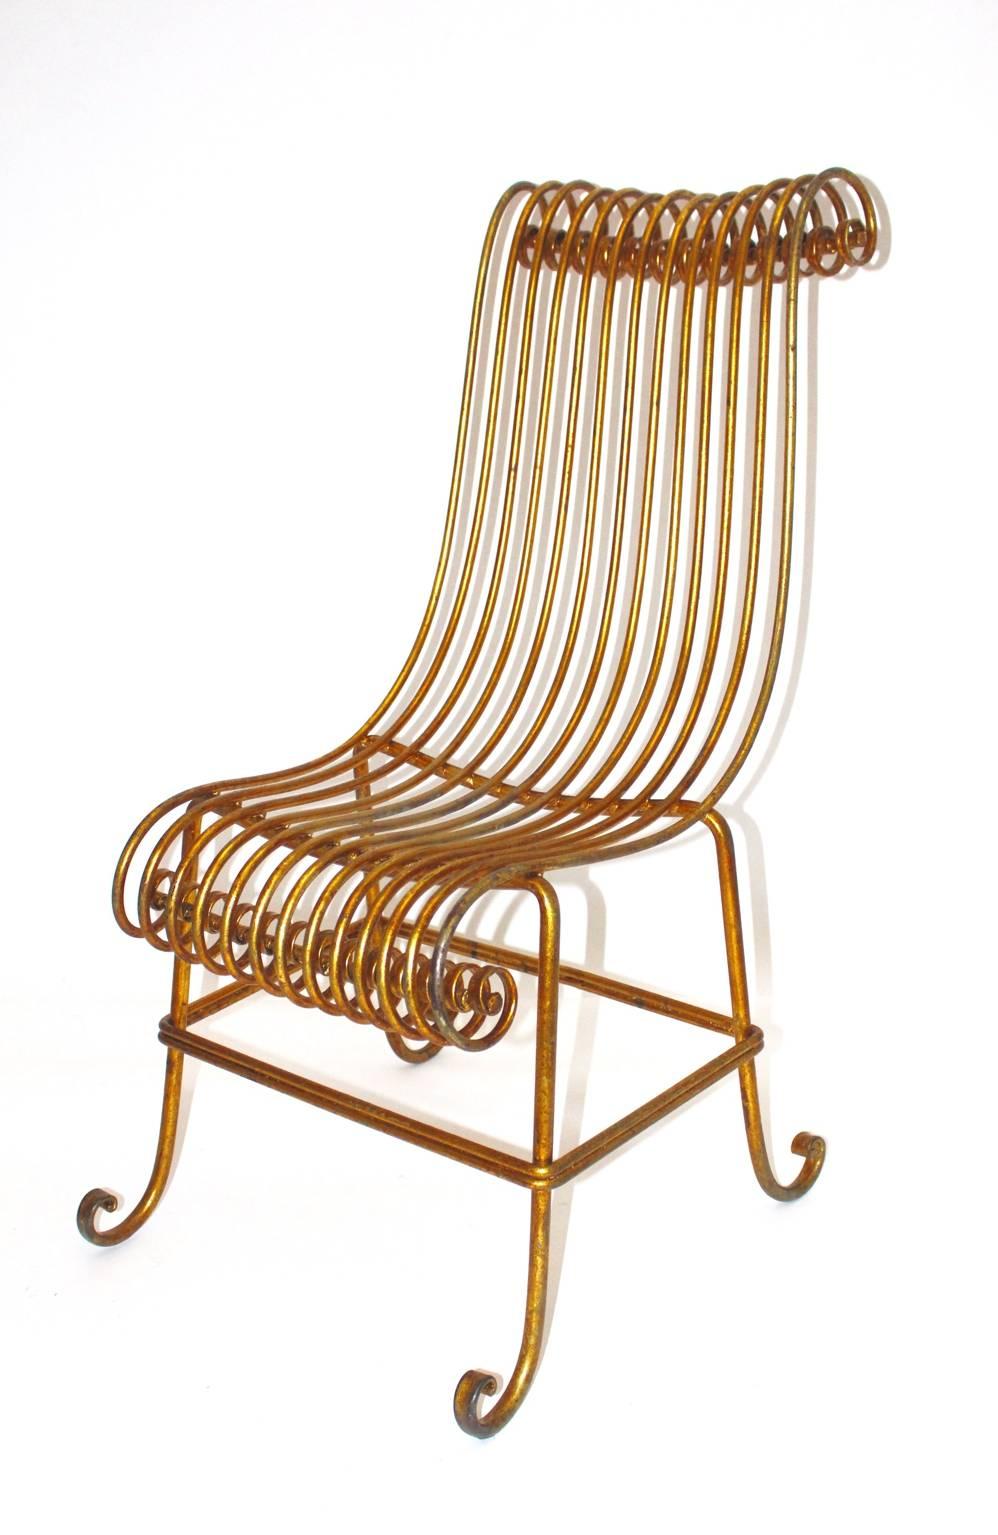 Goldener Beistellstuhl oder Stuhl aus Metall in skulpturaler, leicht geschwungener Form im Hollywood-Regency-Stil der Jahrhundertmitte.
Während der schöne elegante Beistellstuhl oder Stuhl in goldenem Farbton eine einzigartige Form aufweist, hat